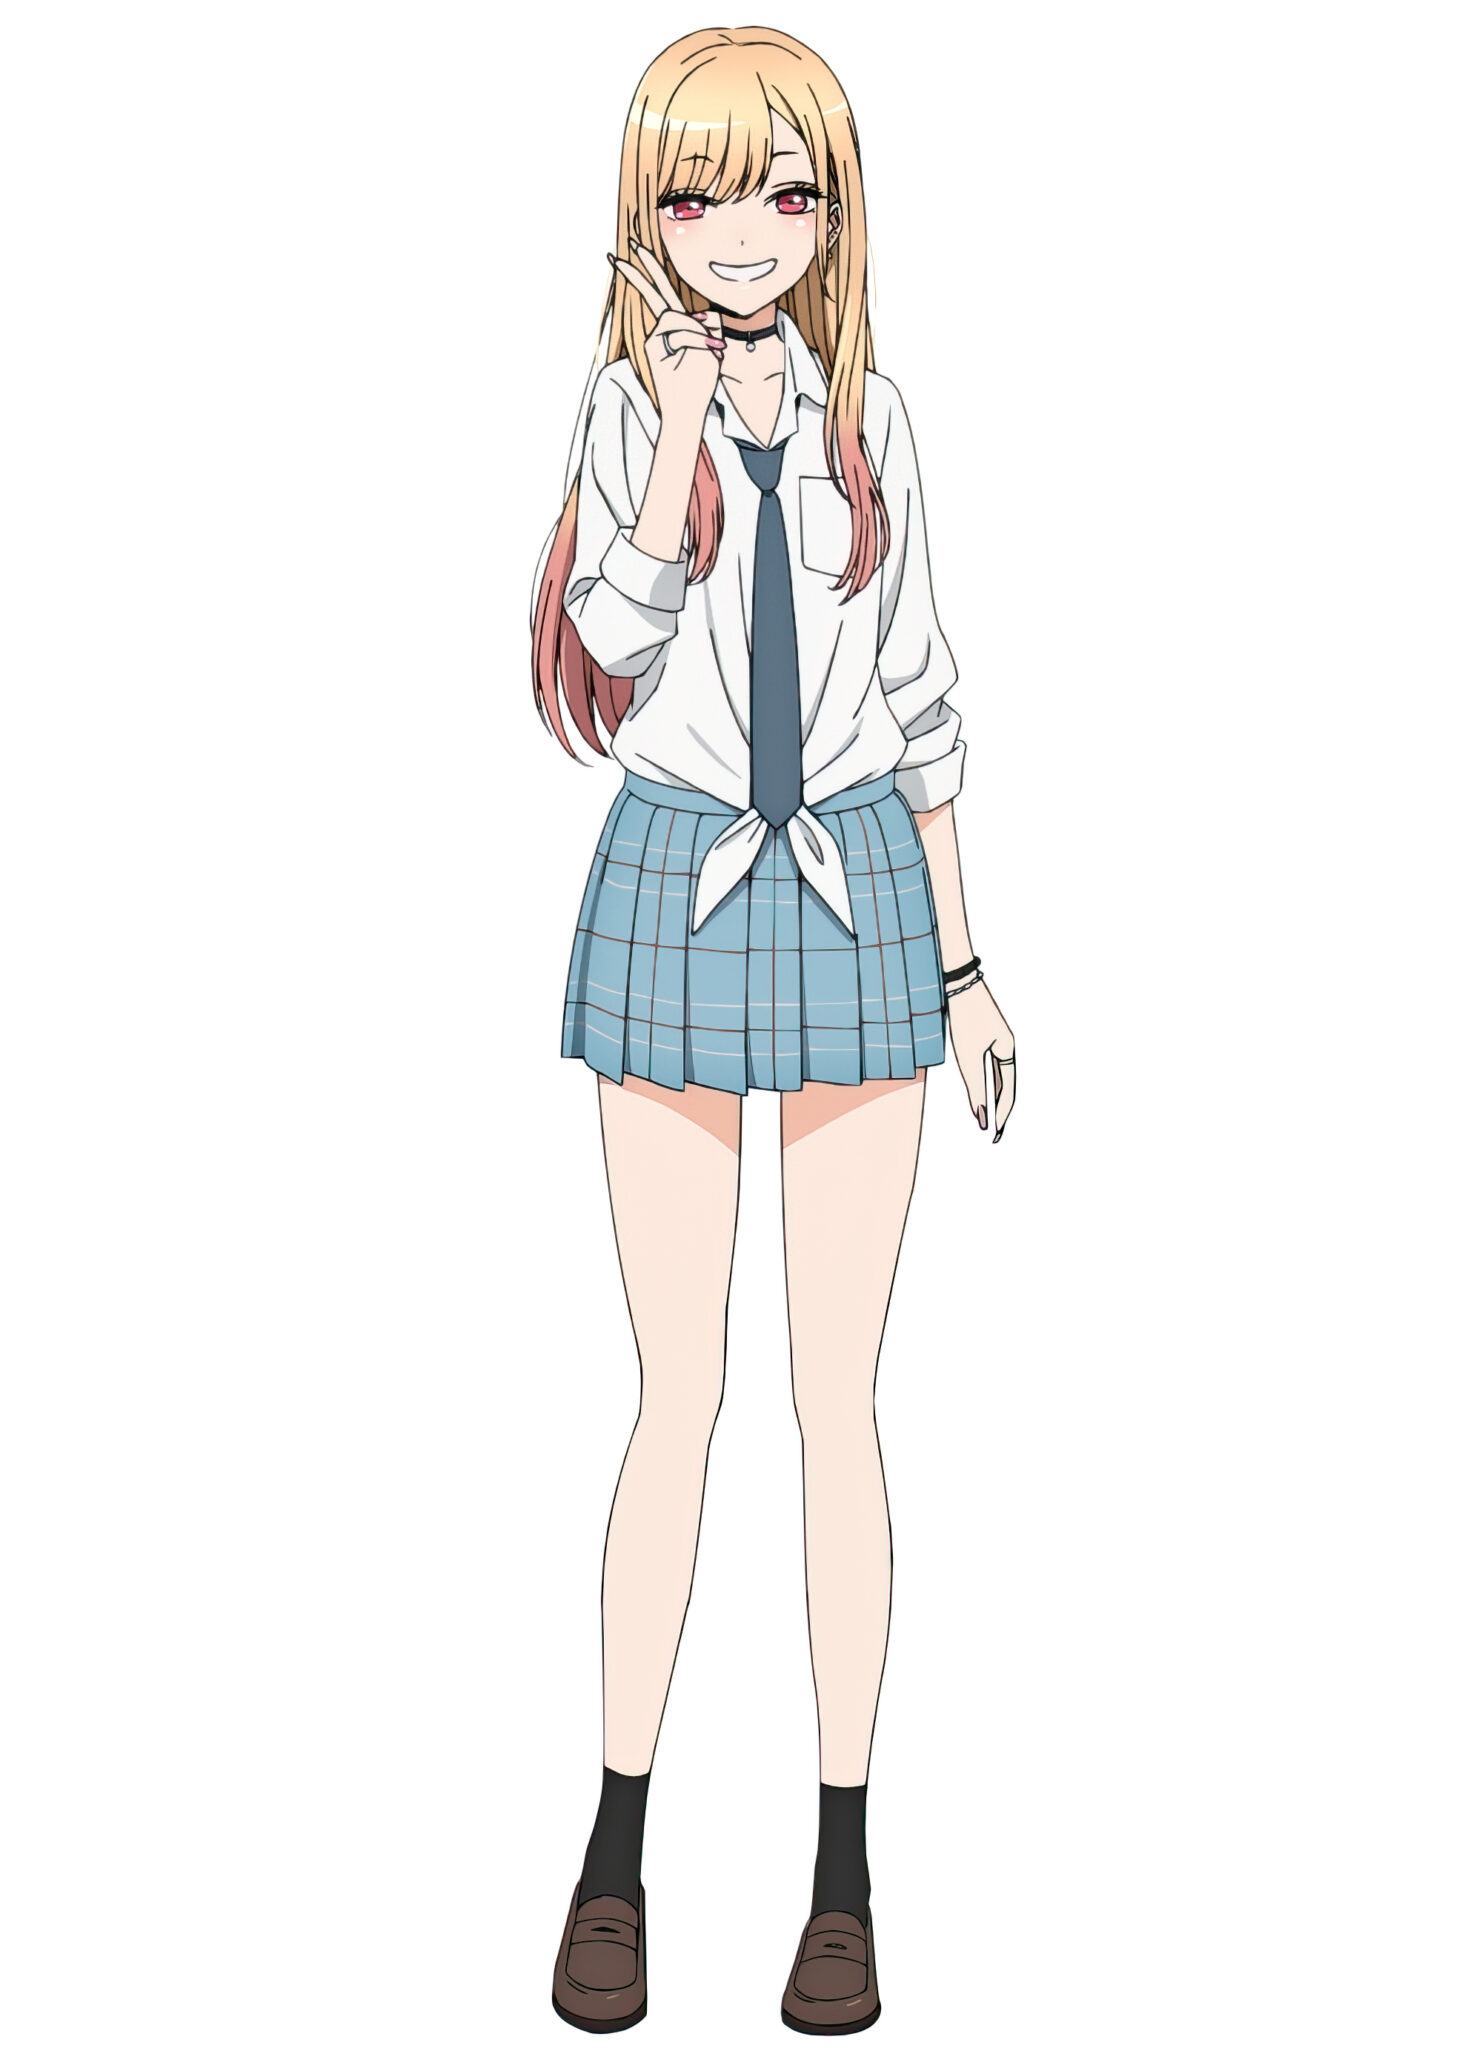 Marin gosta de todas as roupas 🤷  Sono Bisque Doll (dublado) 🇧🇷 #shorts  #react #anime 